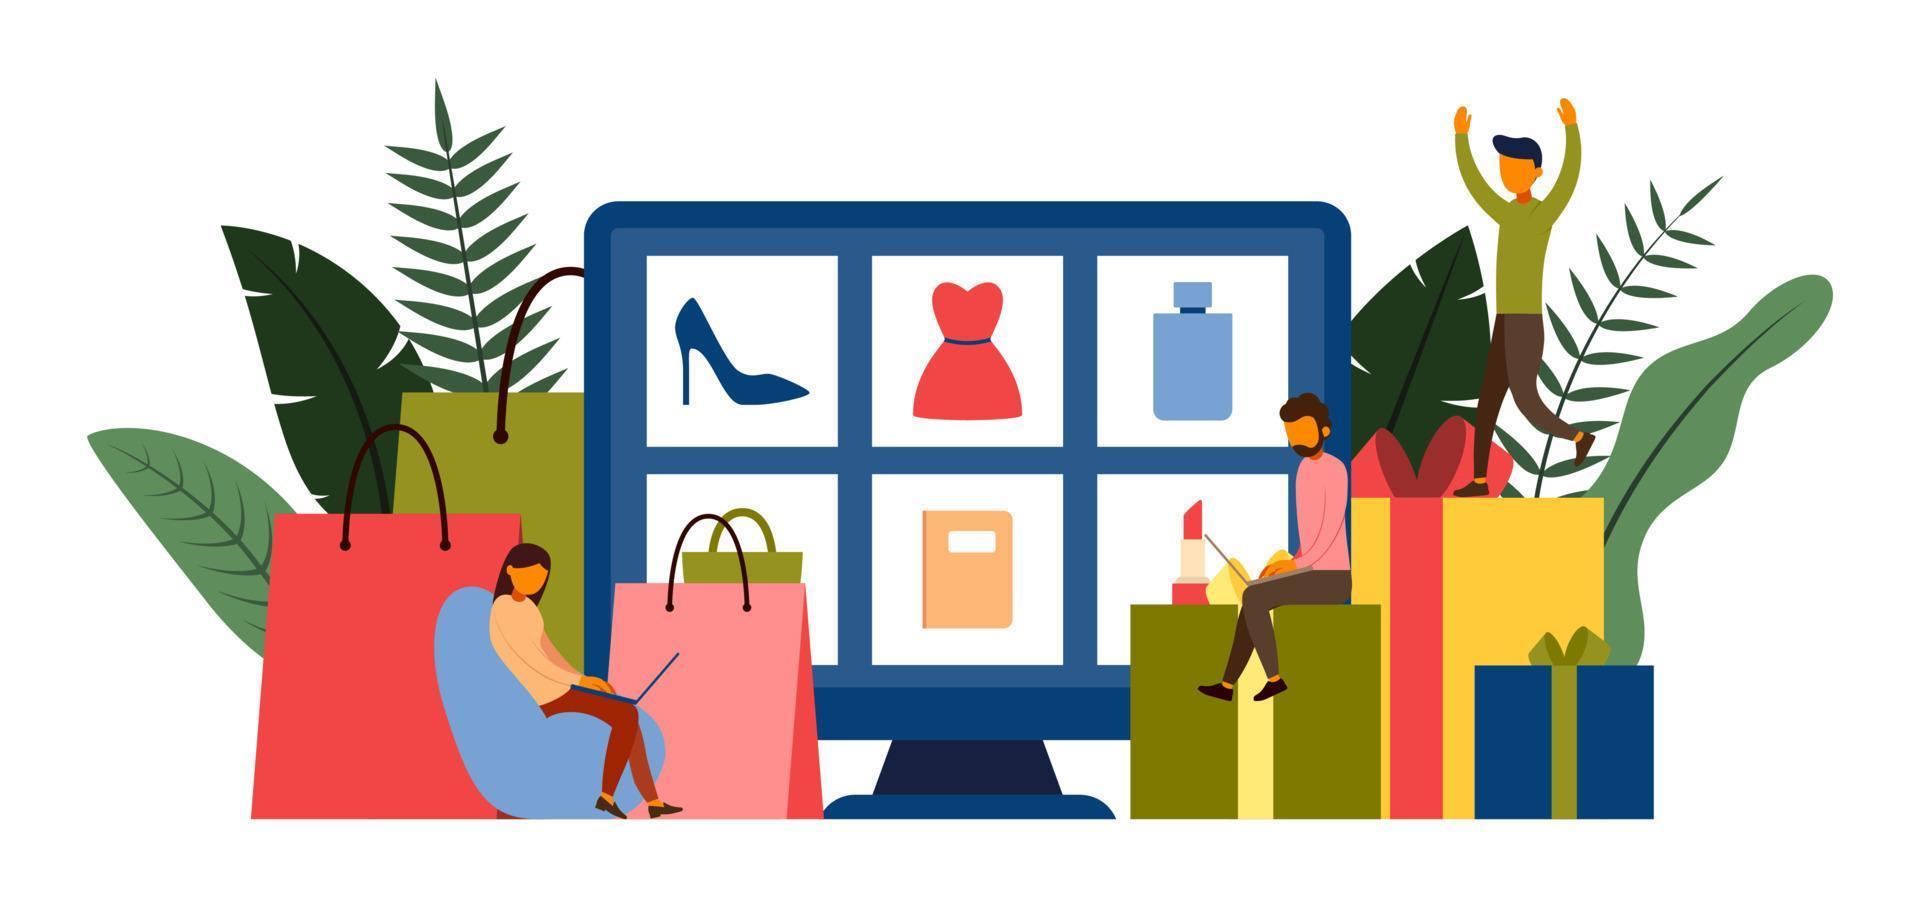 compras online, conceito de e-commerce com personagem, ilustração vetorial vetor